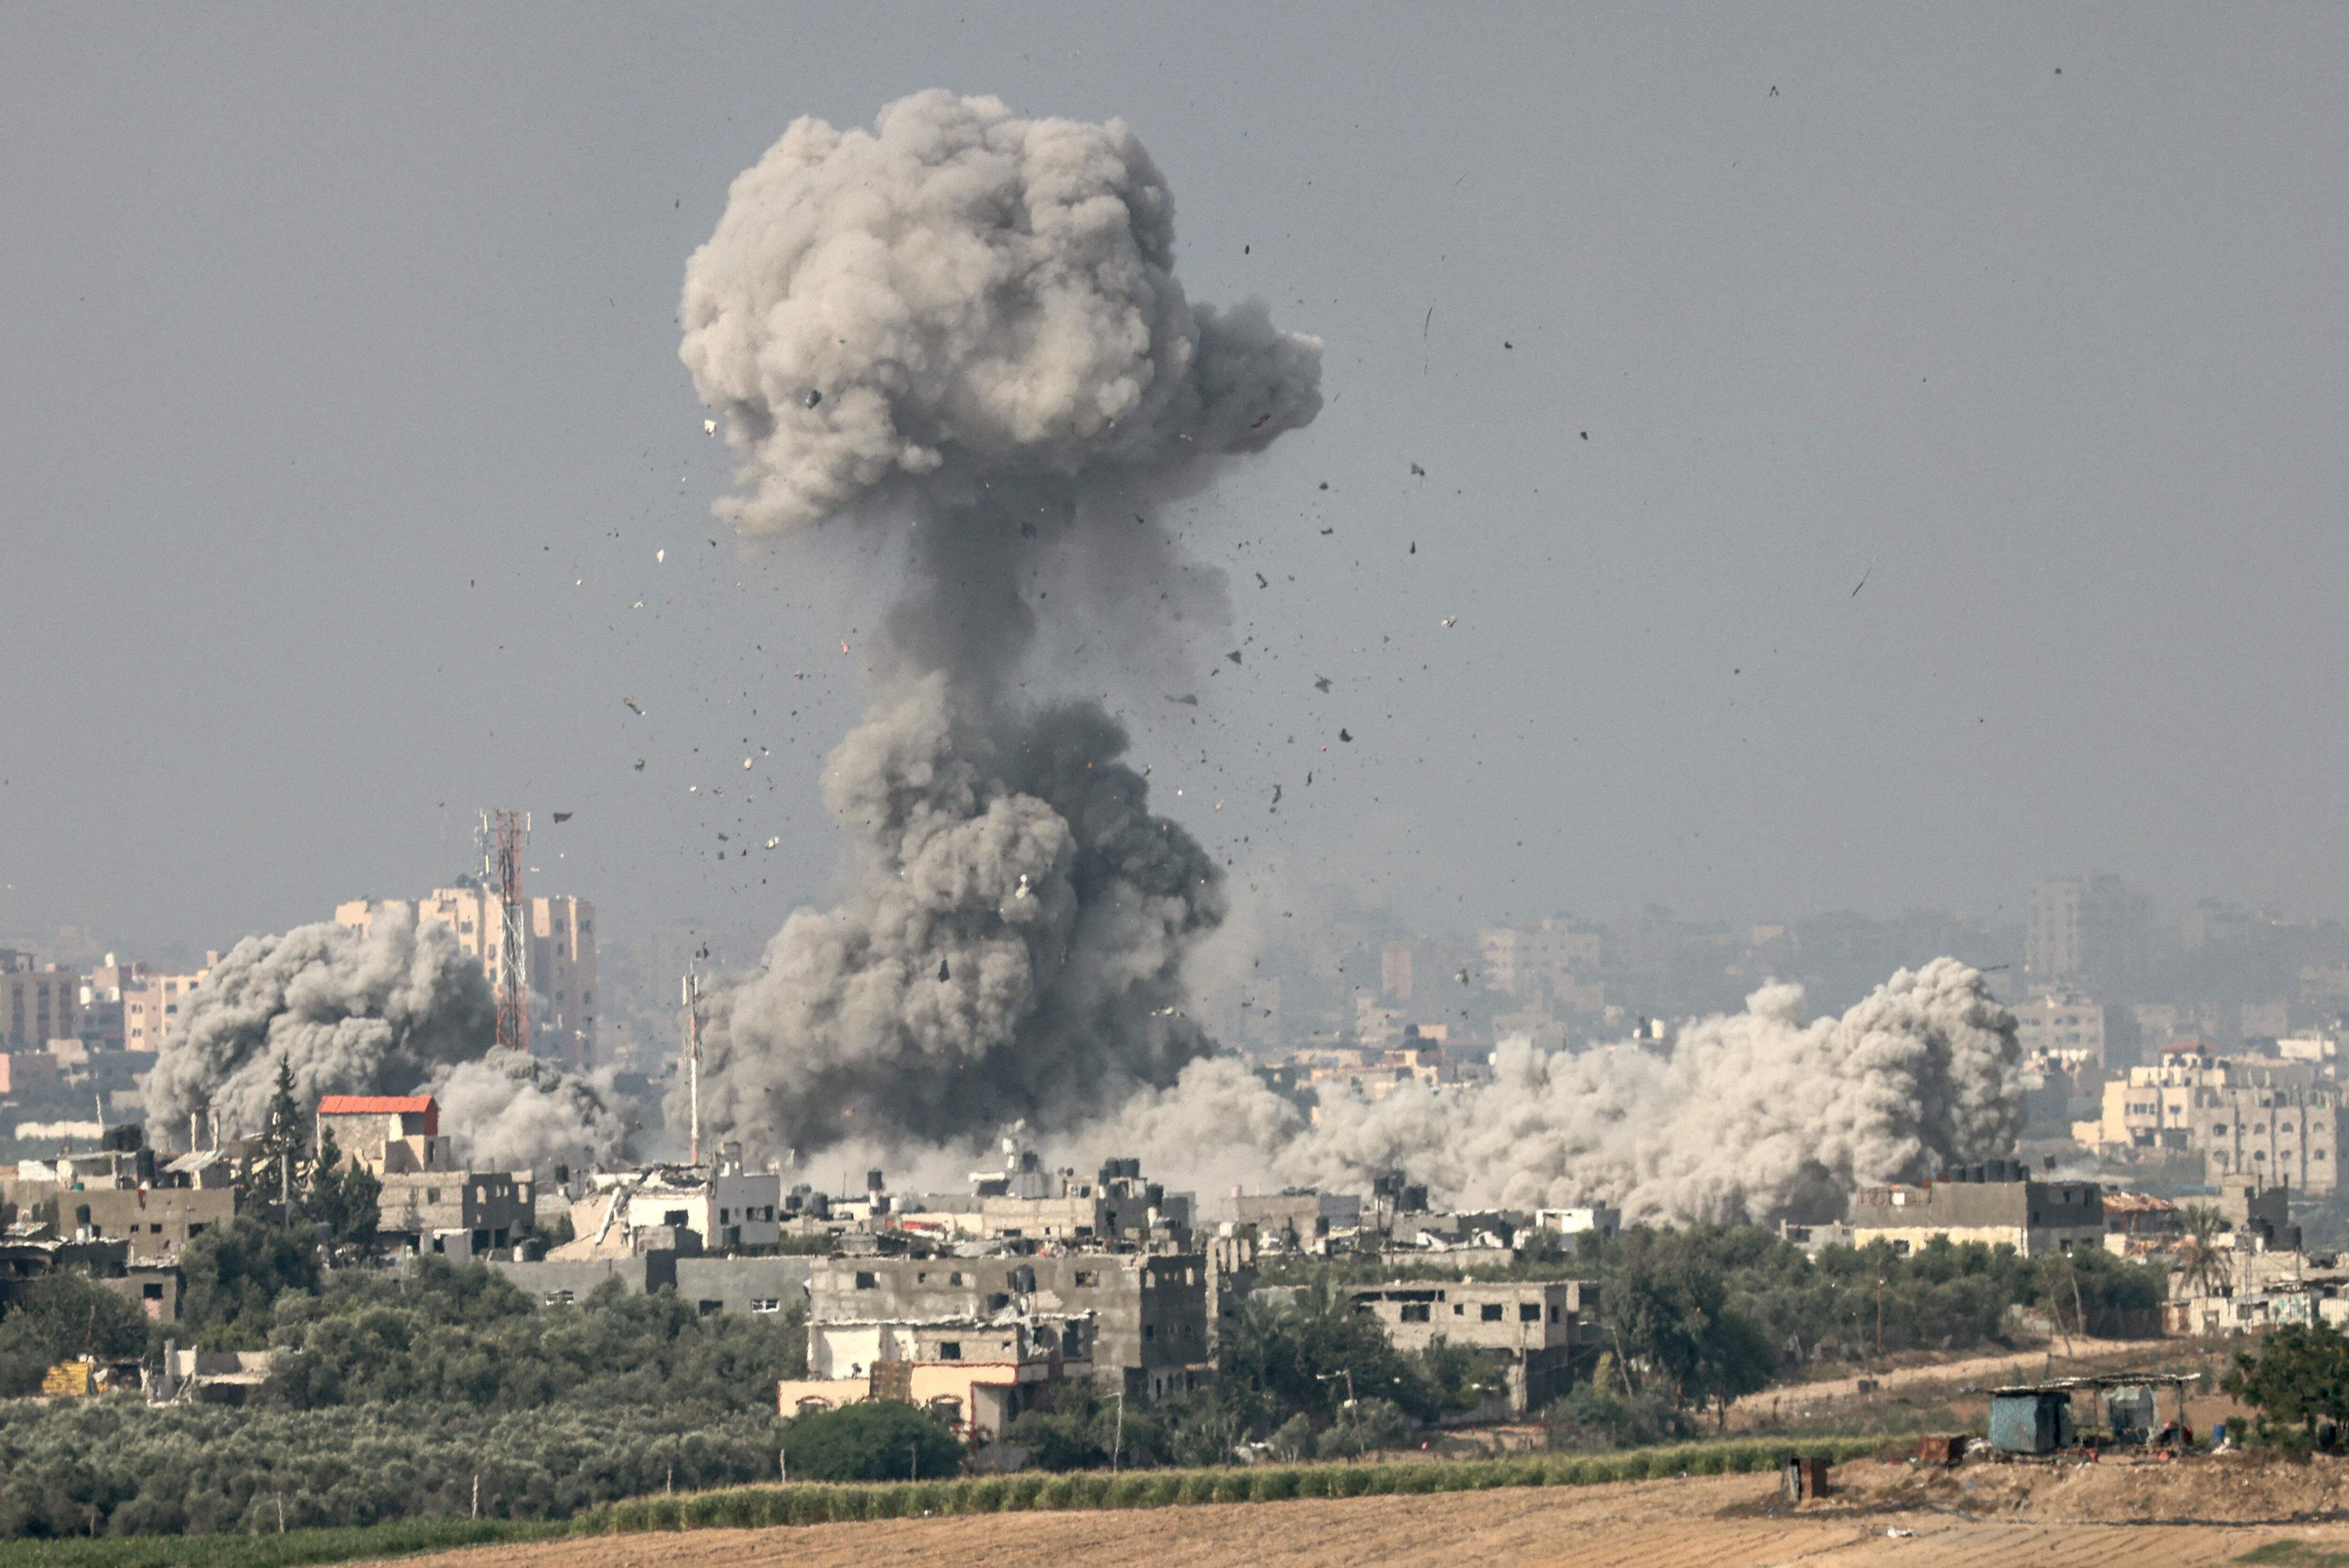 Israel respondió con intensos bombardeos que dejaron a más de 6,500 gazatíes muertos, según cifras divulgadas por el ministerio de Salud controlado por Hamás en el territorio.